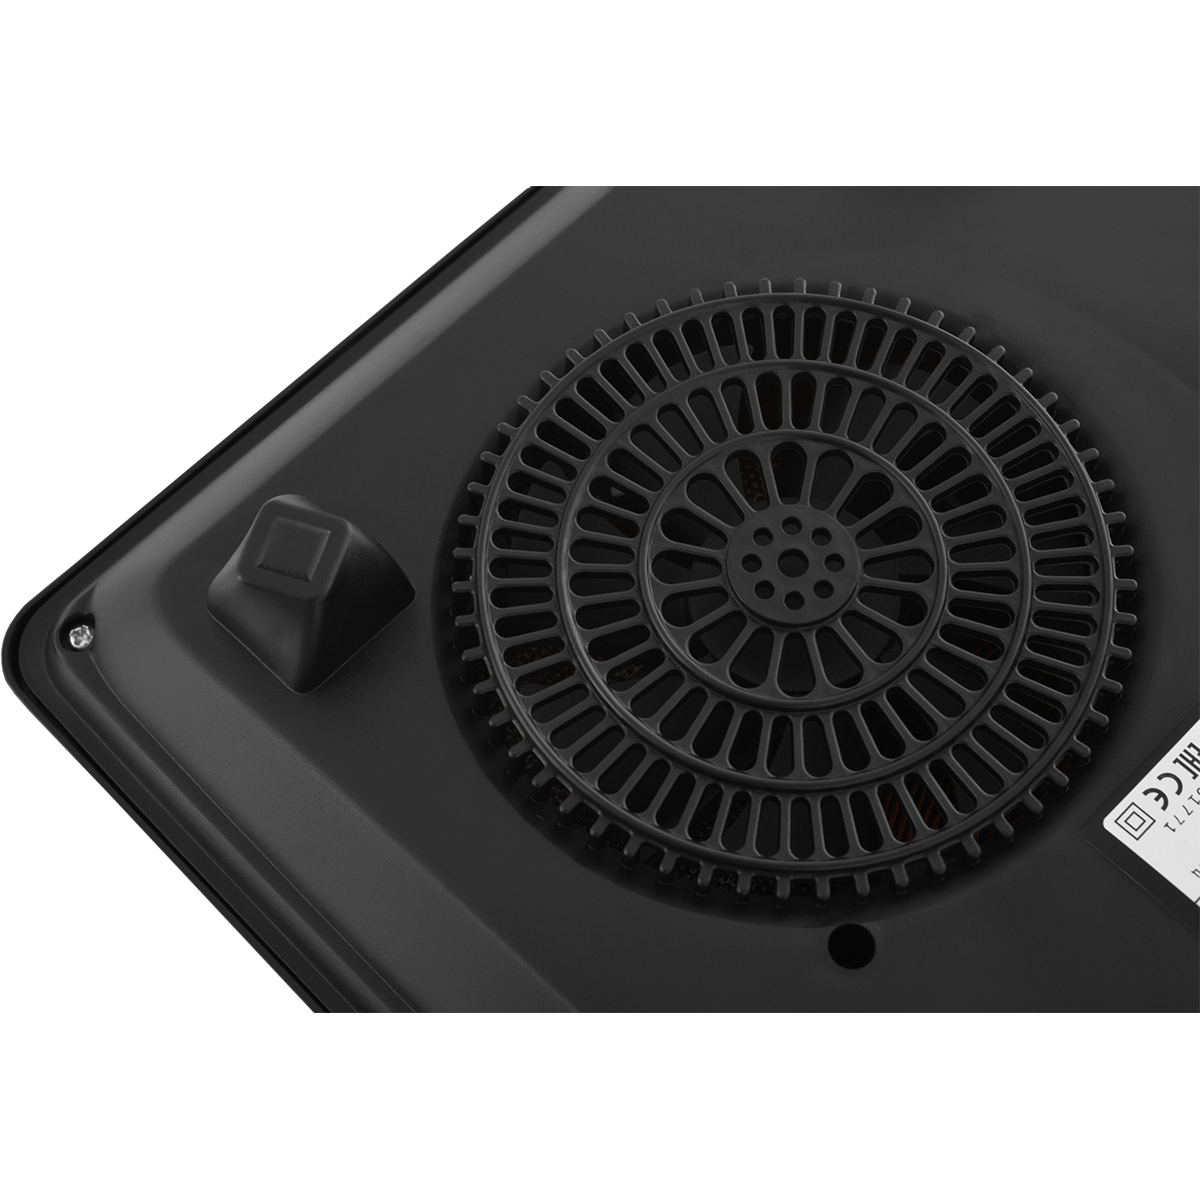 картинка Настольная плита индукционная ZUGEL ZIHF60B, черная